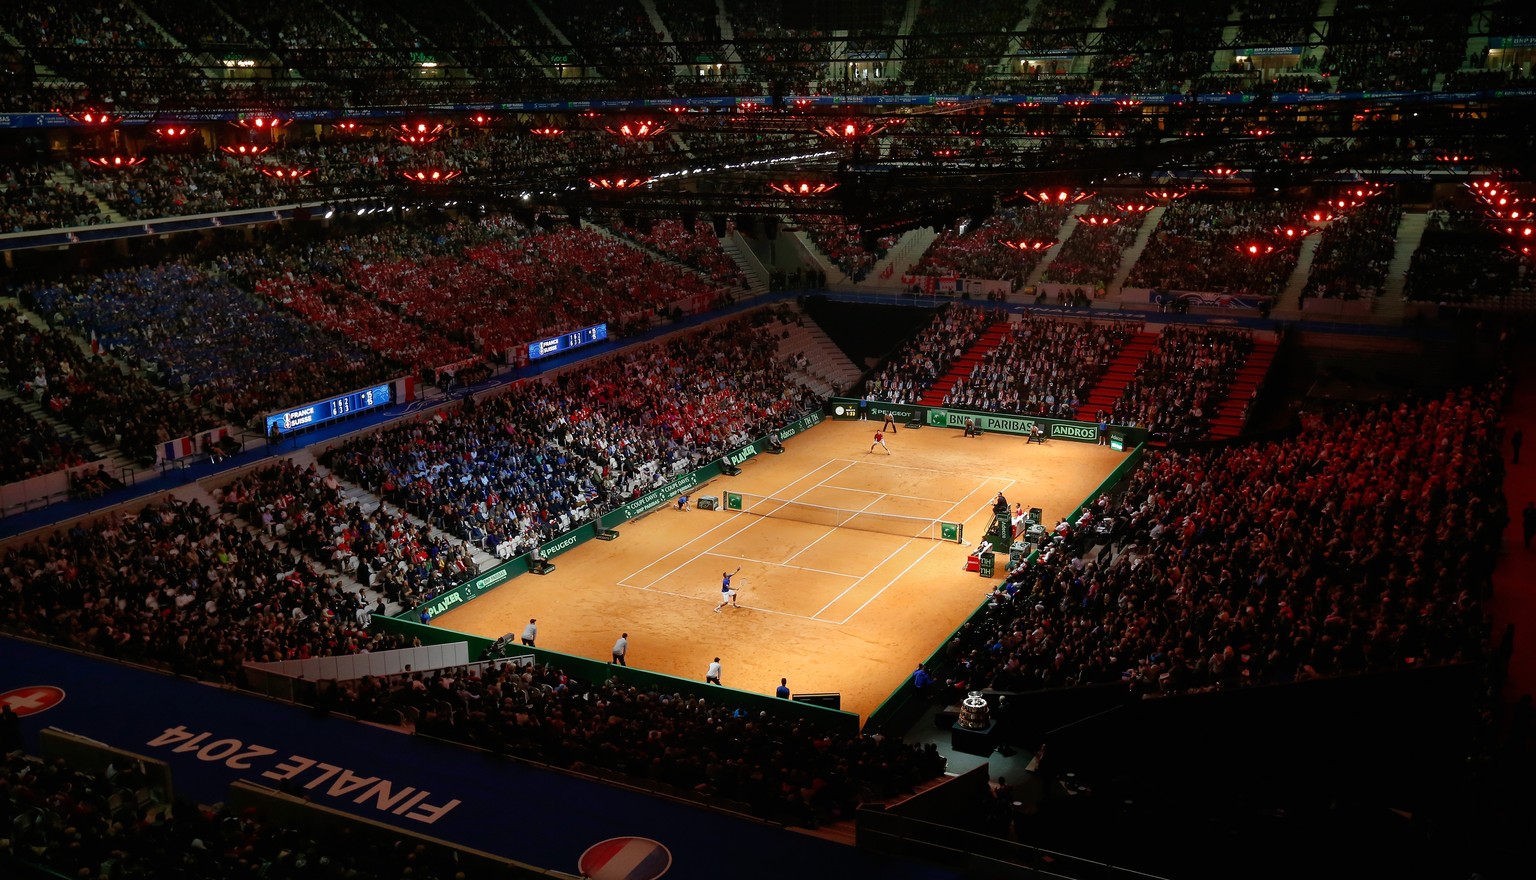 Äusserst eindrucksvoll: Die riesige Arena in Lille, in der ein neuer Zuschauer-Weltrekord aufgestellt wurde.